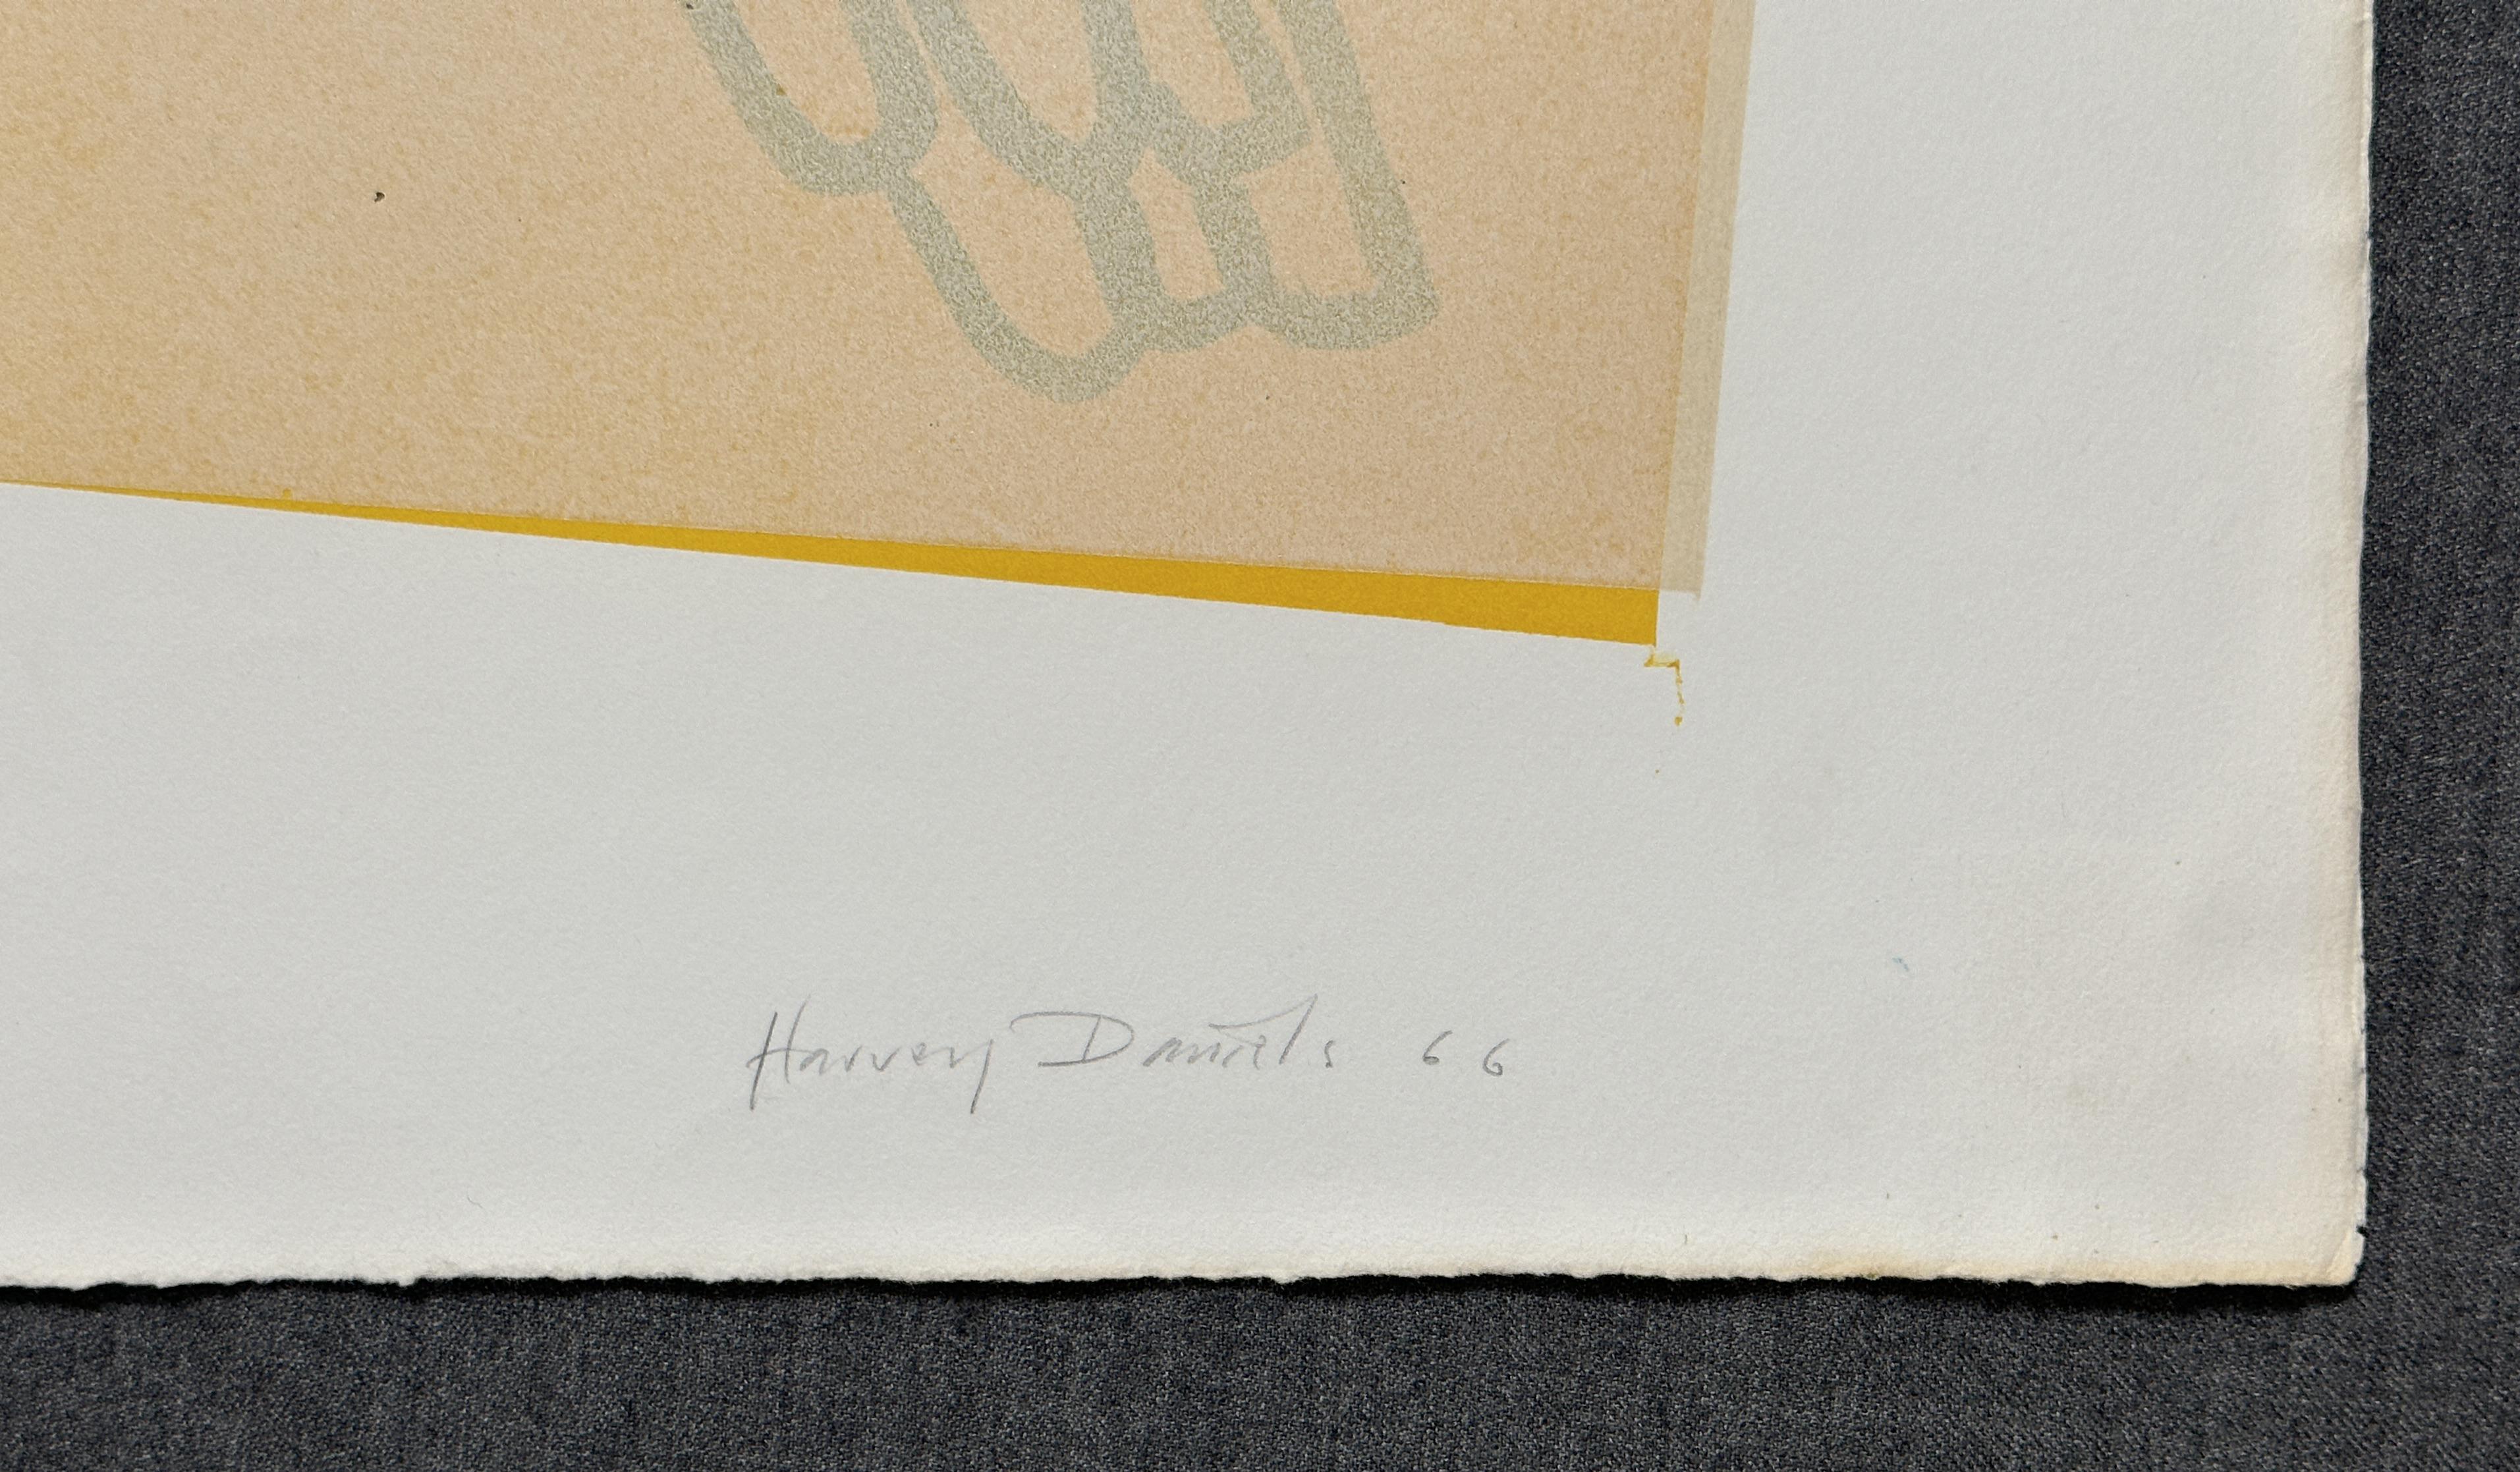 Zwei Papageien 1966 Original signierte Lithographie Pop Art – Print von Harvey Daniels